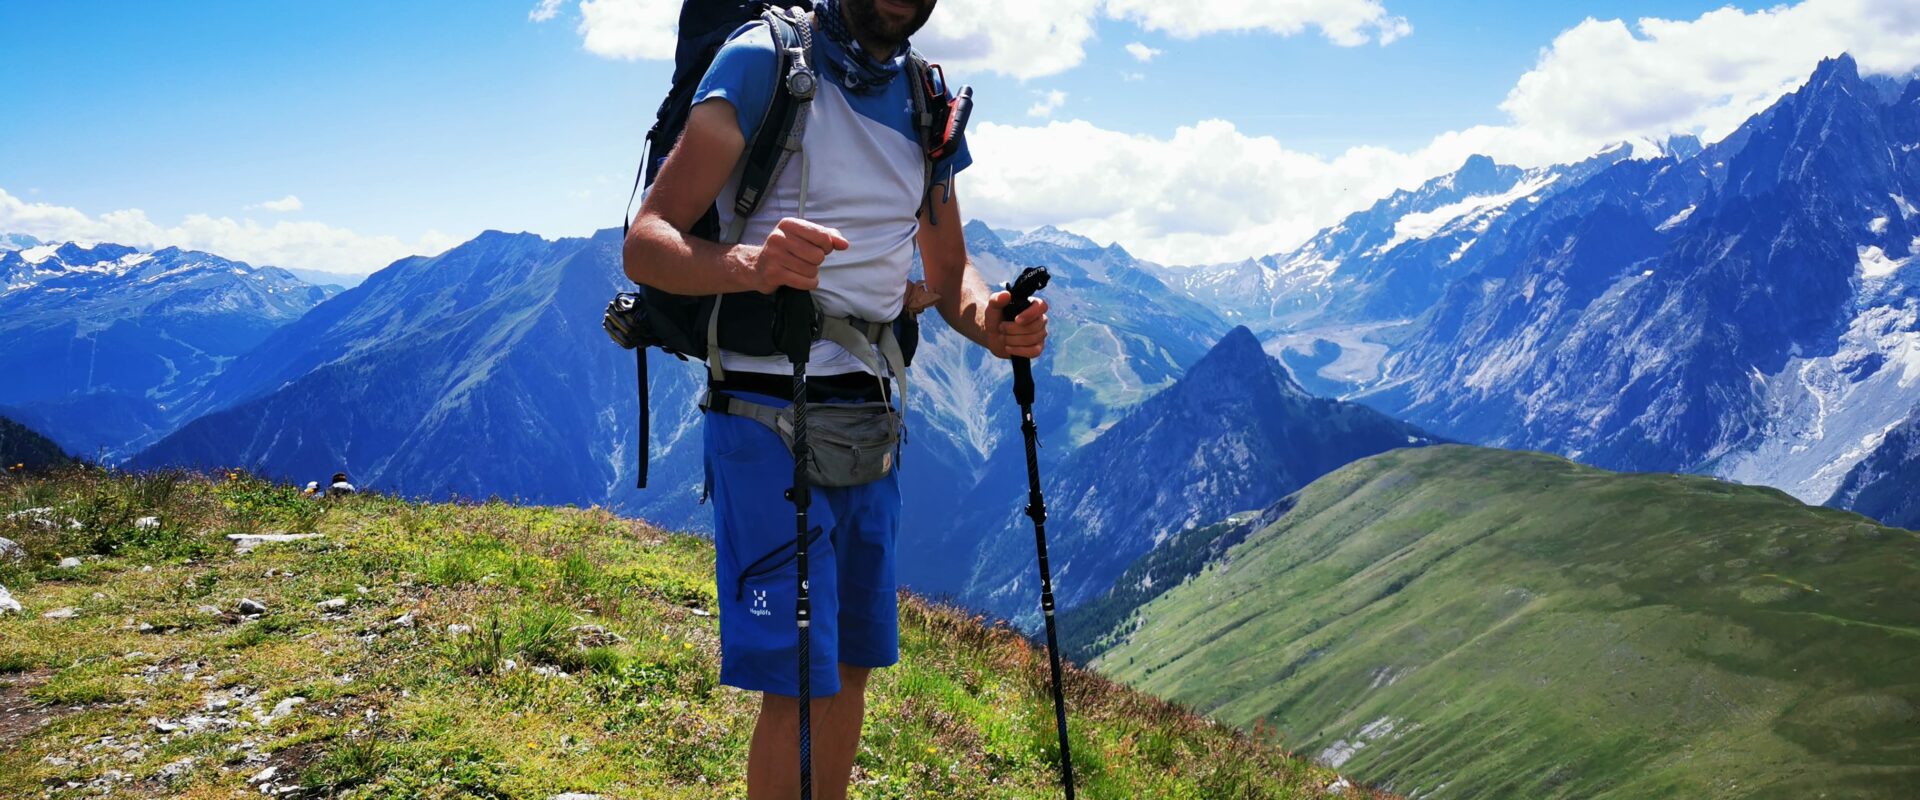 tour du mont blanc avec les bâtons de randonnée Guidetti